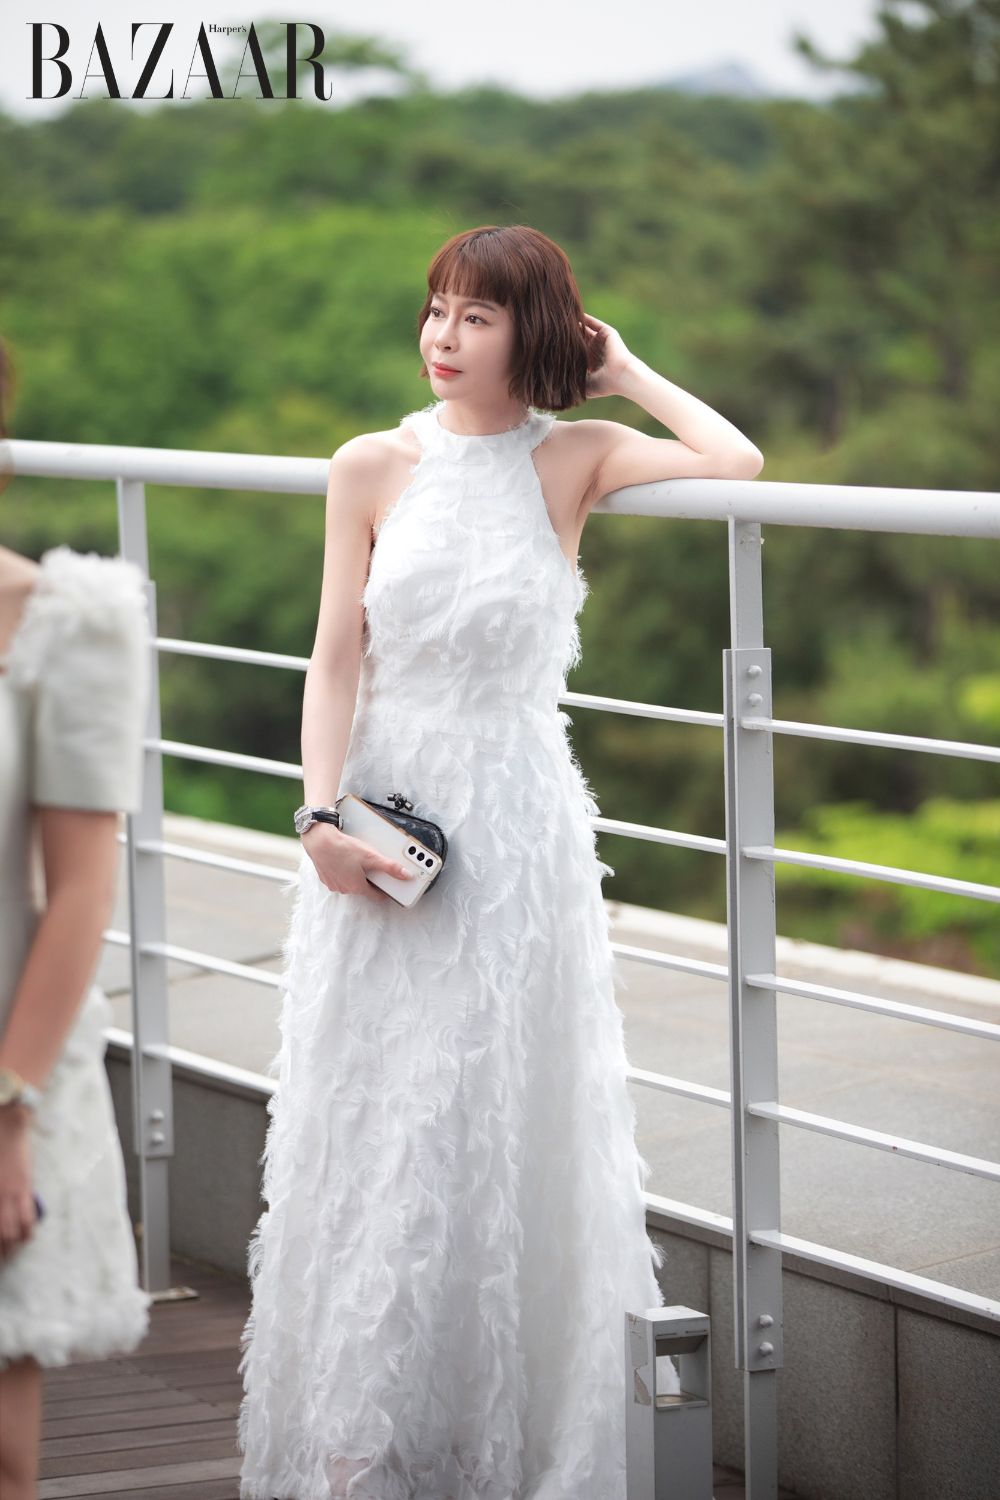 Hoa hậu Hải Dương trong trang phục trắng